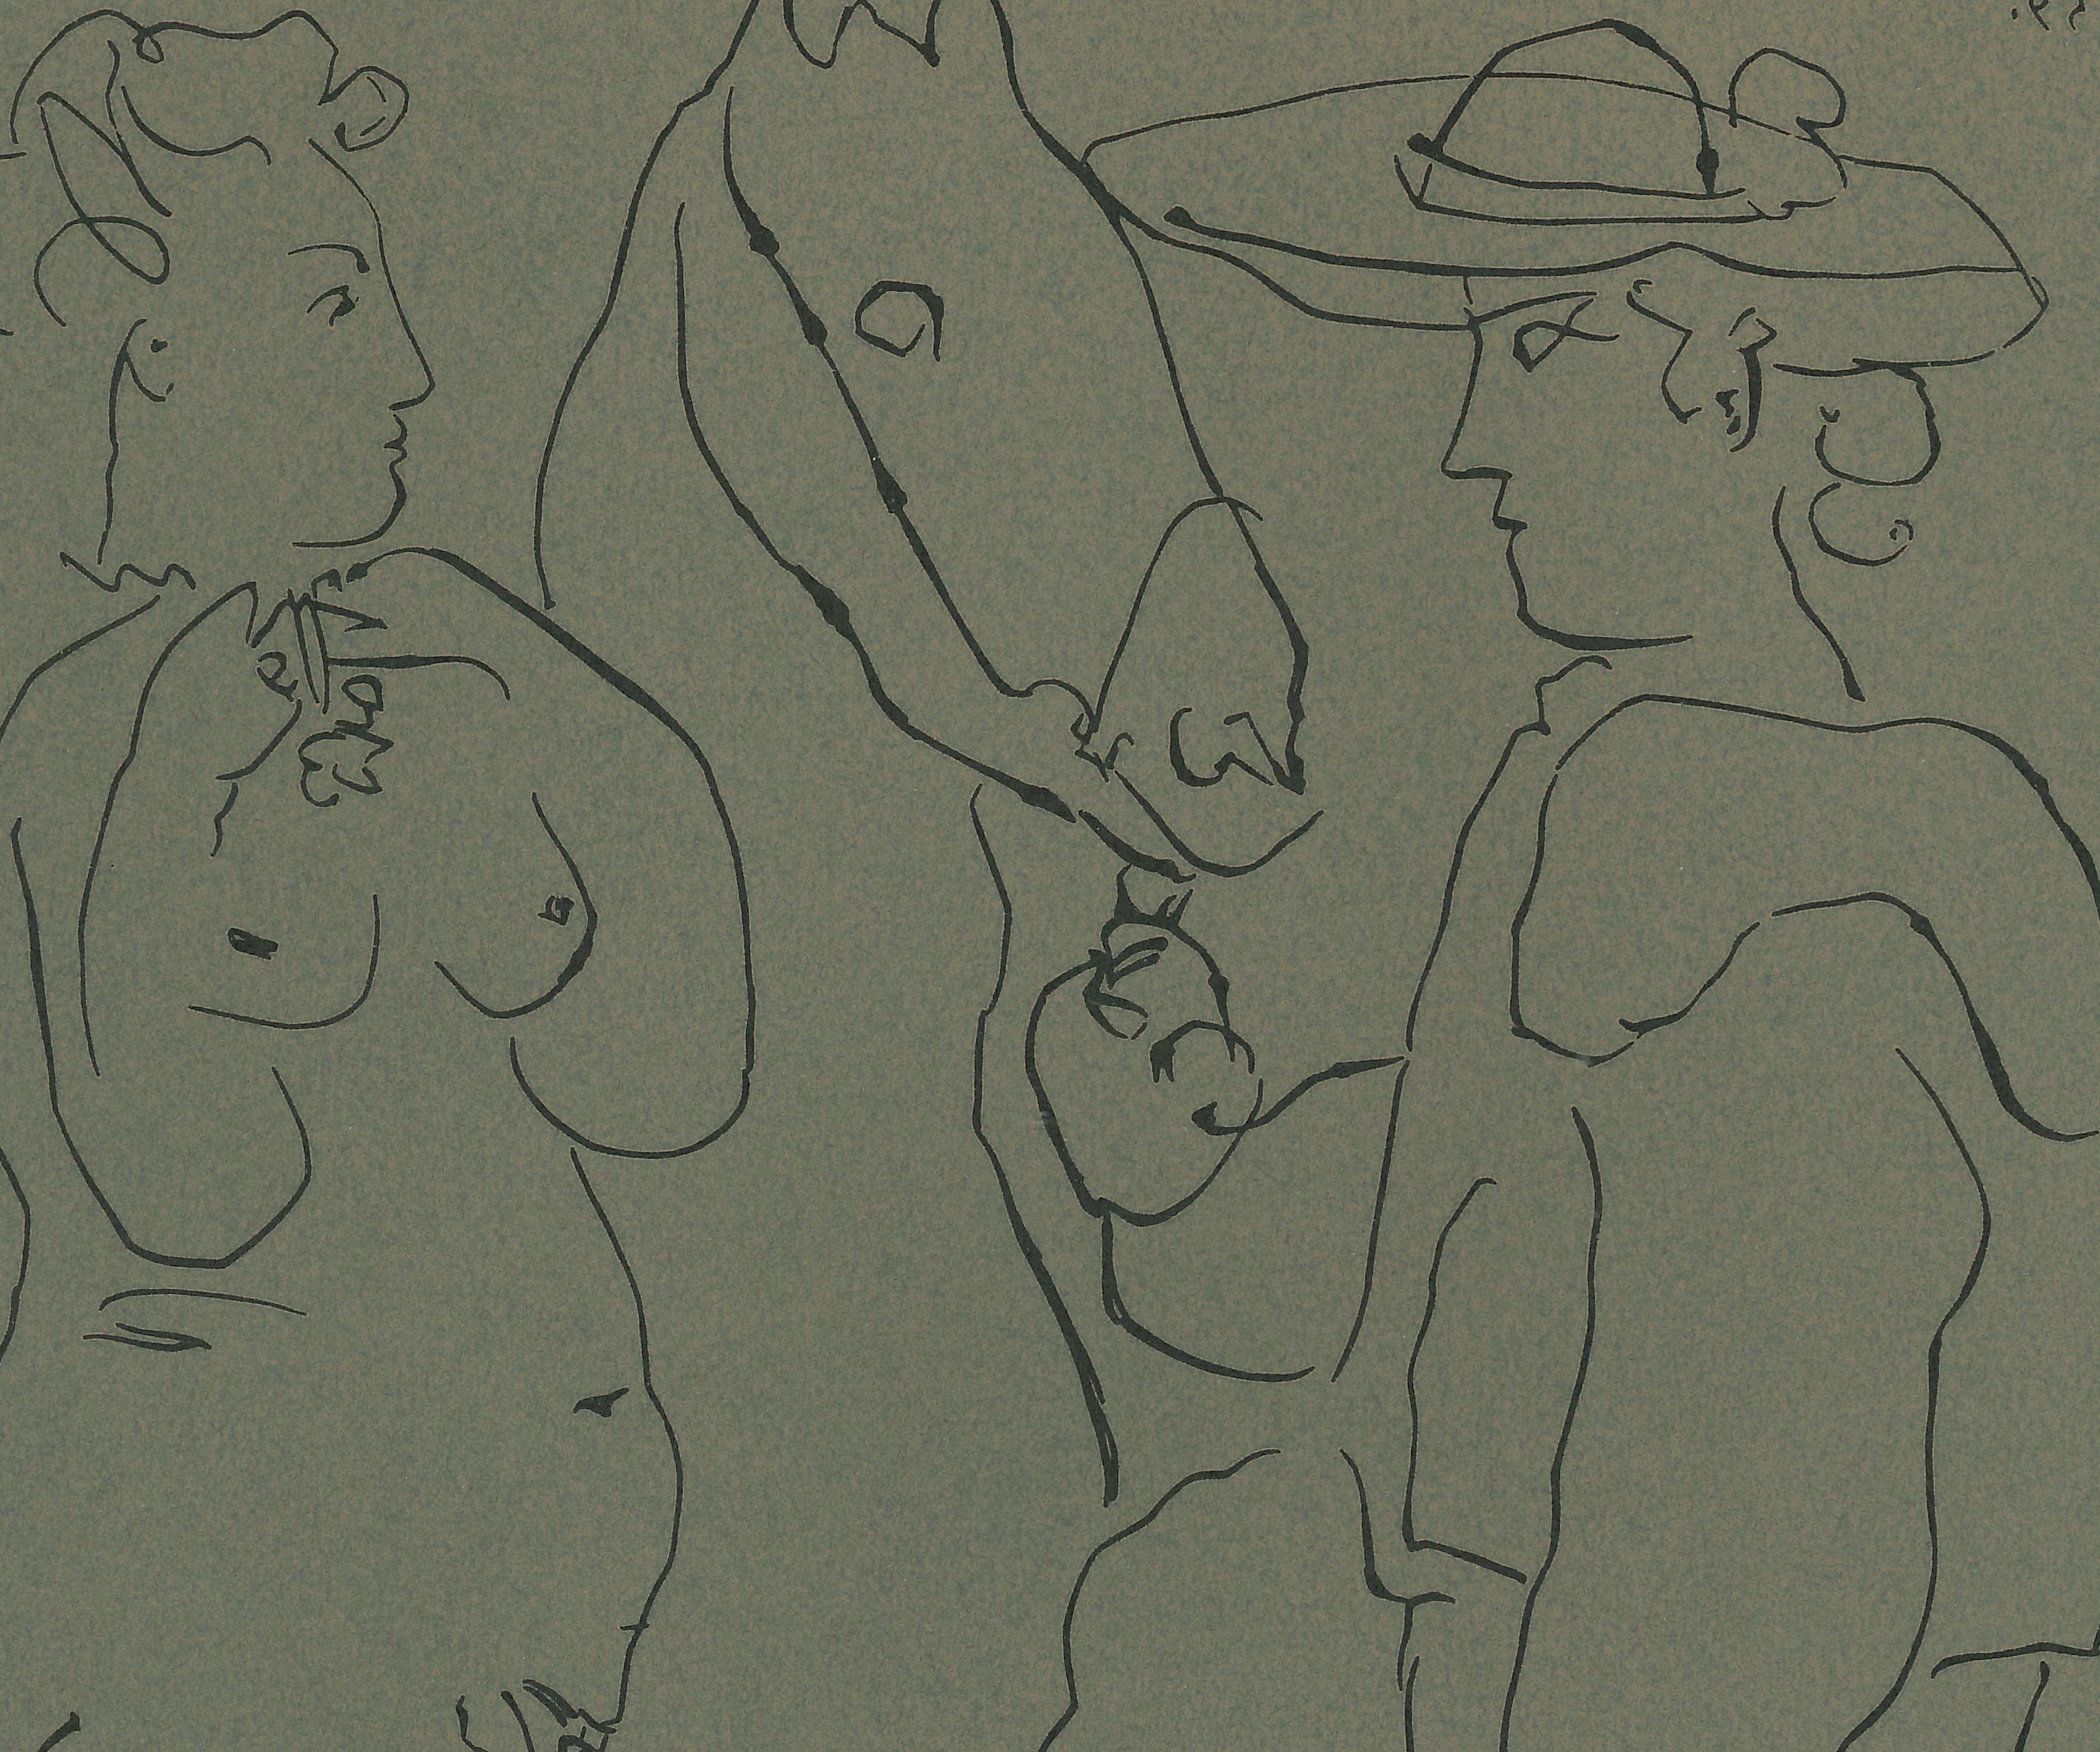 Picador, Femme et Cheval - Linogravure d'après Pablo Picasso - 1962 - Print de (after) Pablo Picasso